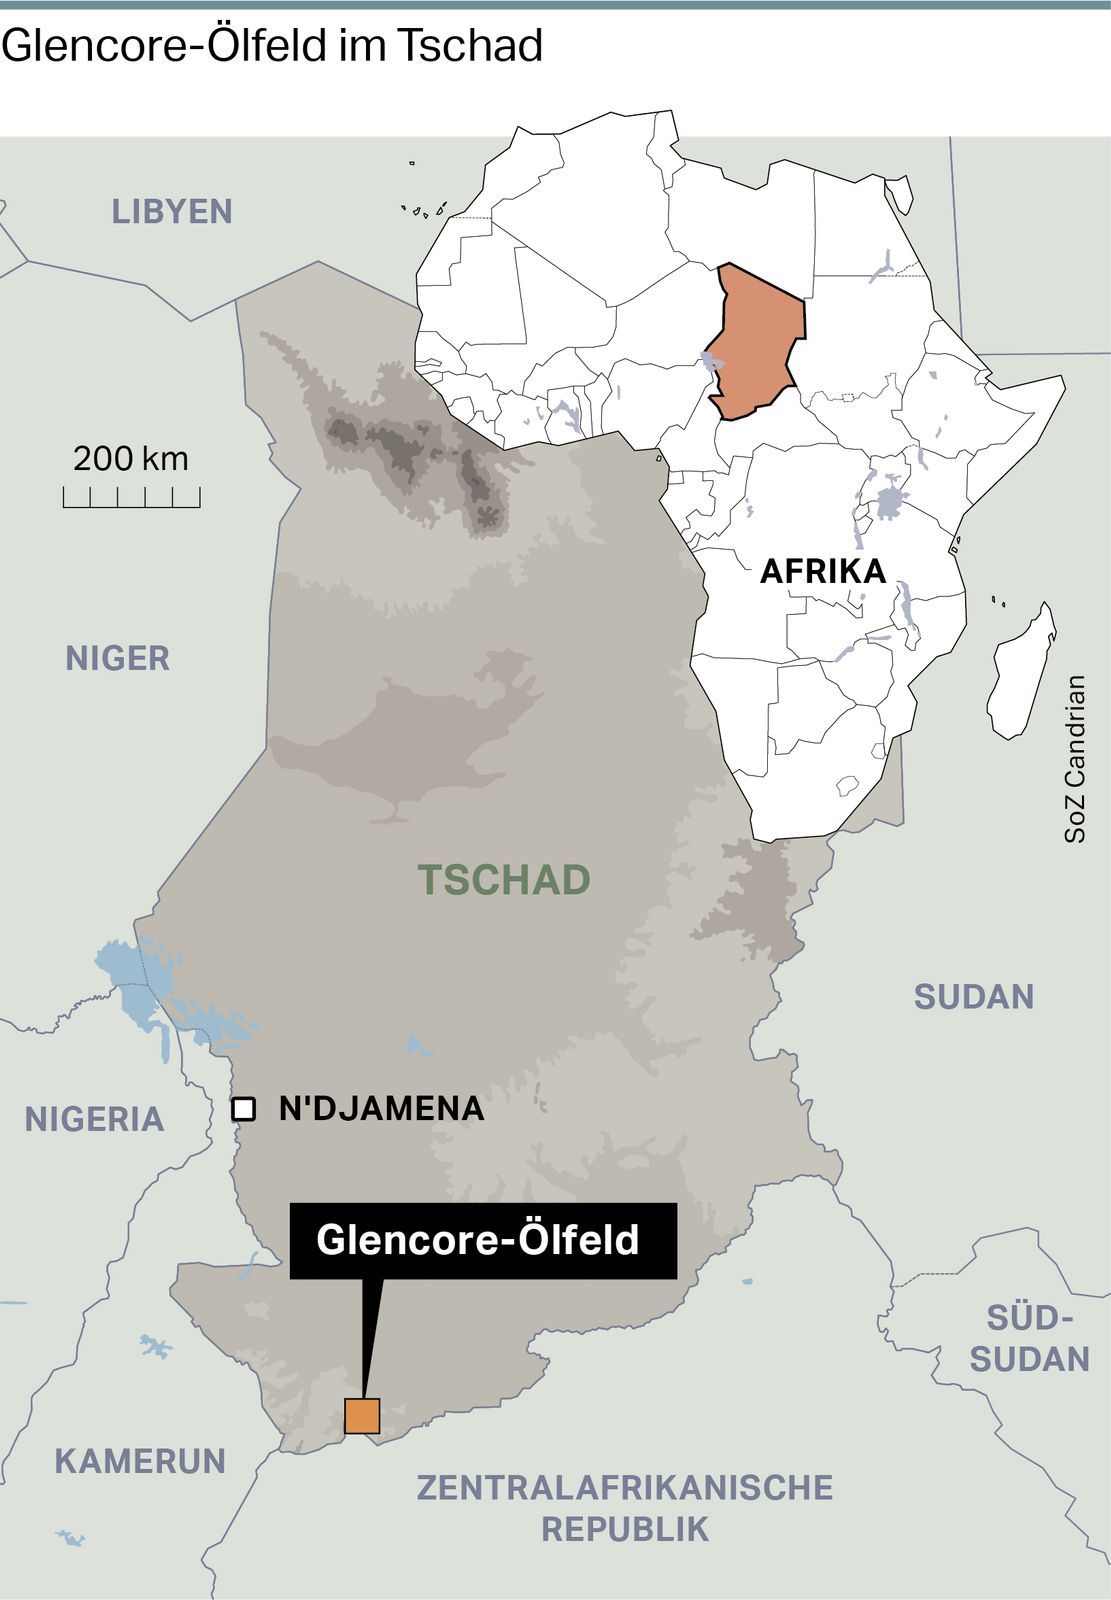 Glencore-Ölfeld Führt Zu Grossem Leid Im Tschad | Tages-Anzeiger über Teil Von Nigeria Kreuzworträtsel